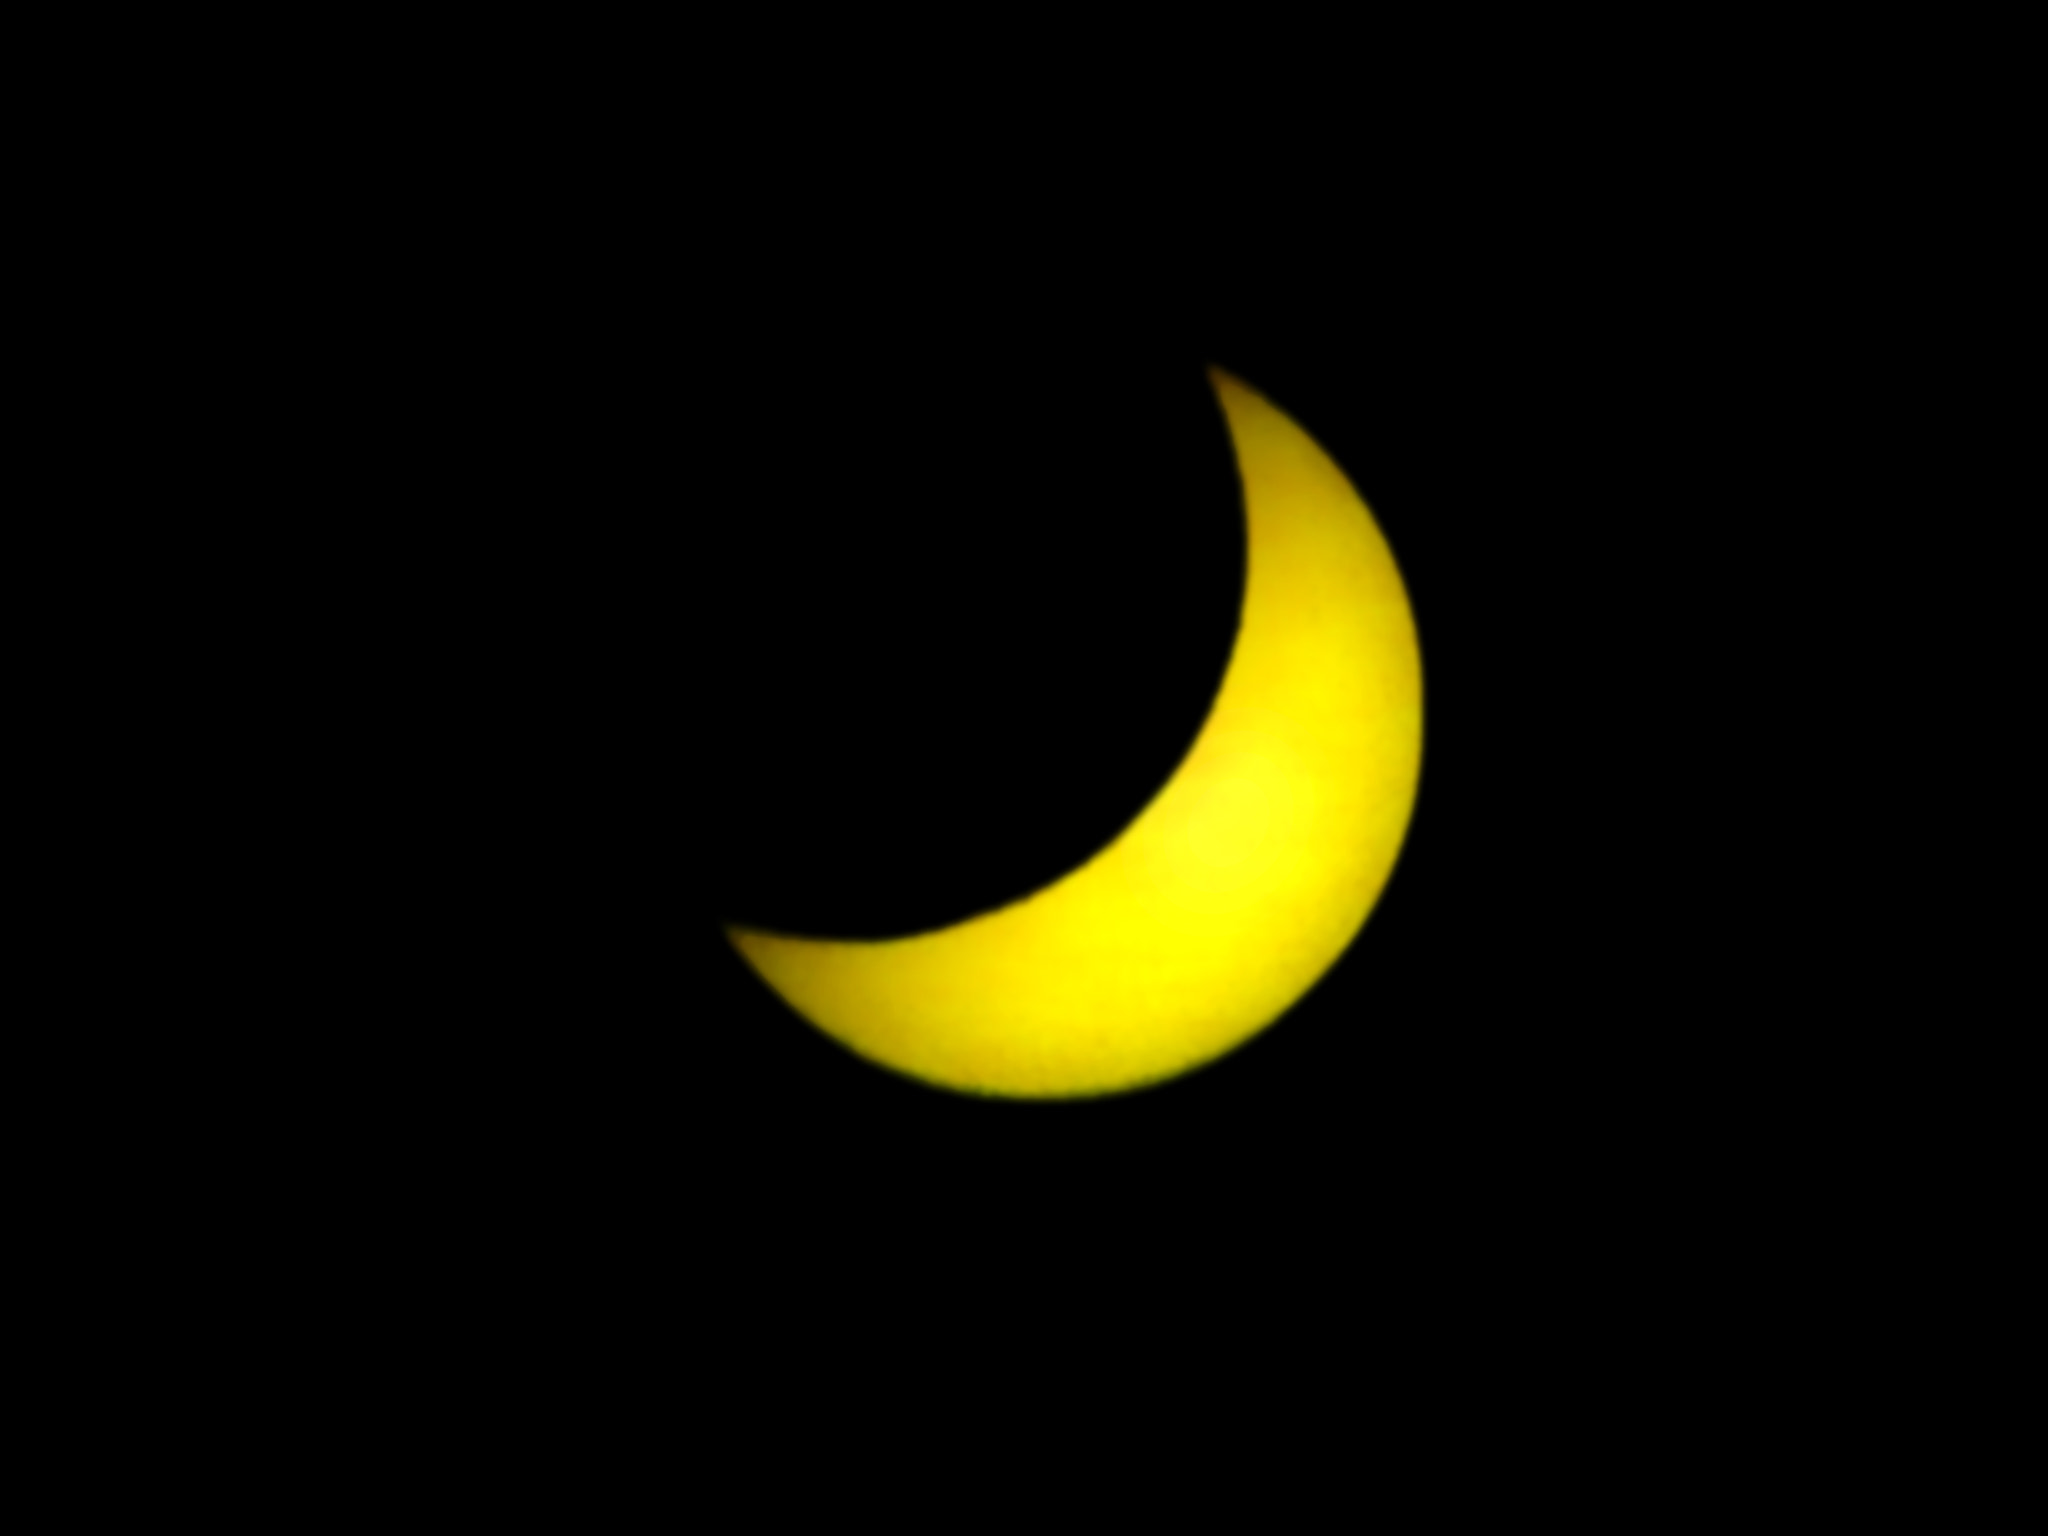 Fujifilm FinePix S5700 S700 sample photo. Eclipse parcial de sol concepción 11 octubre de 2010 photography